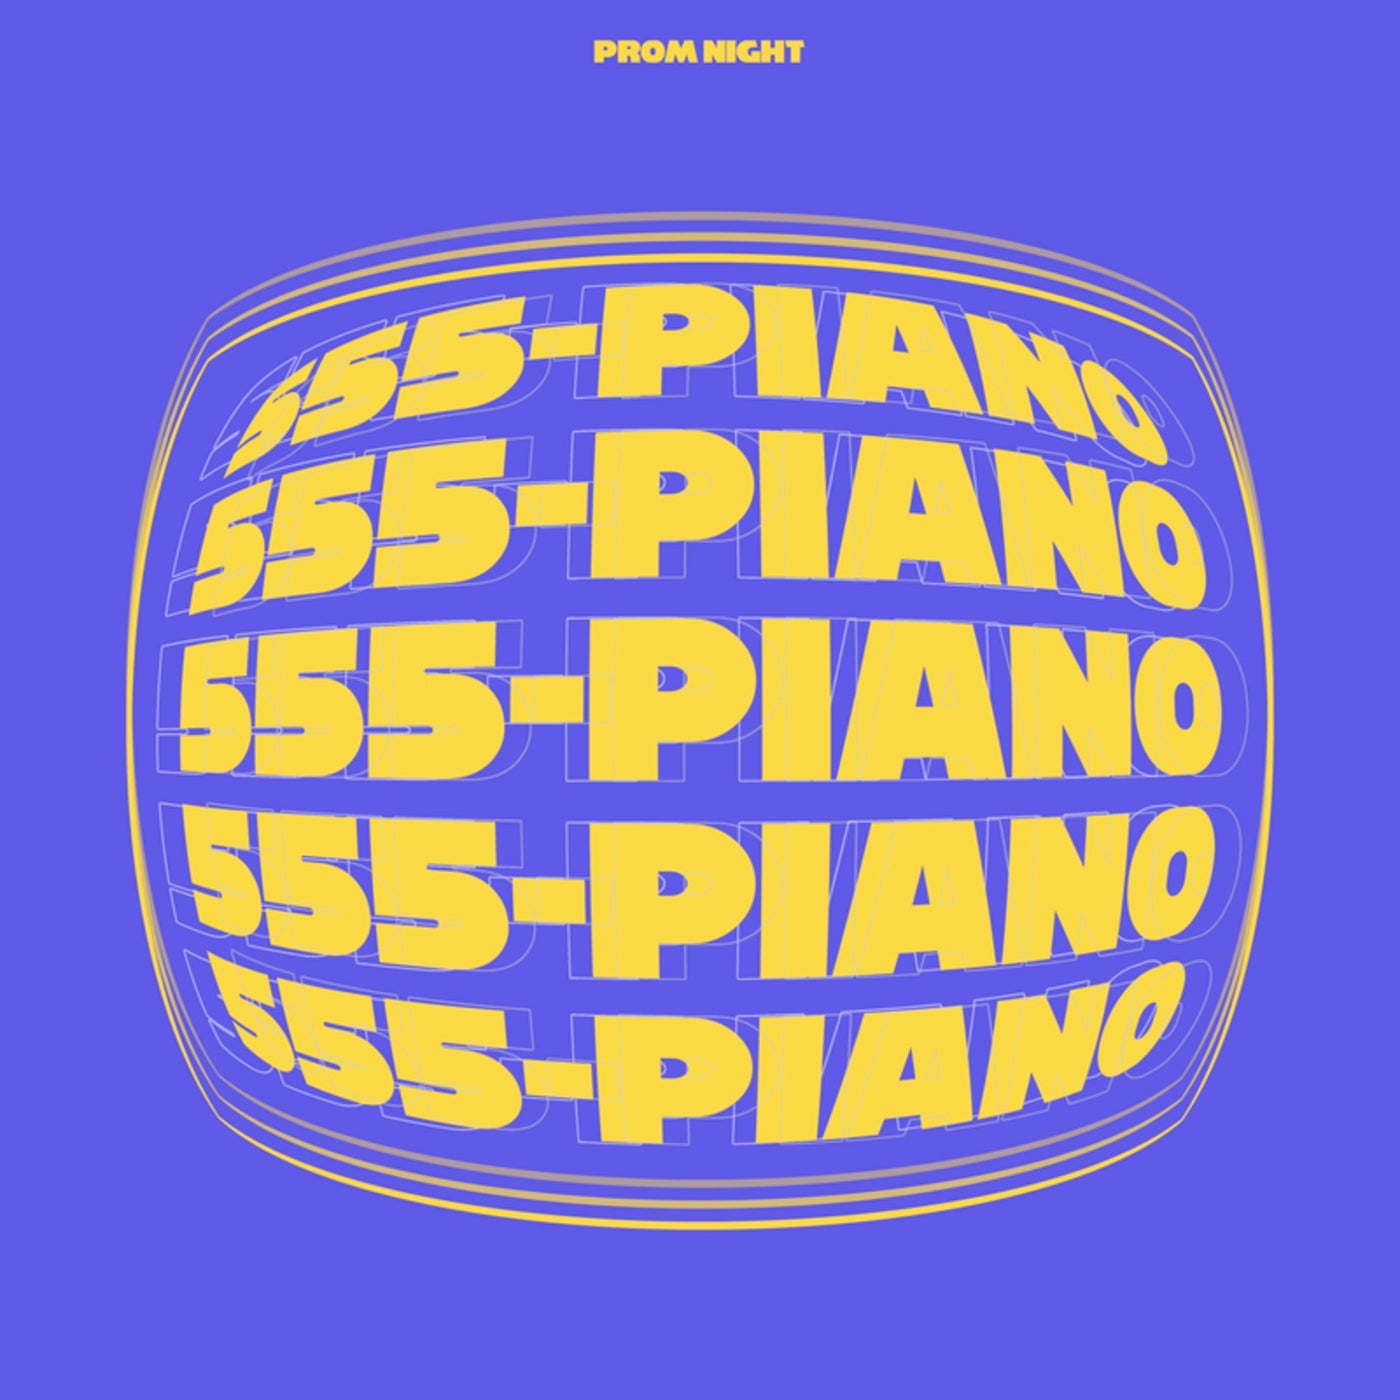 555-PIANO